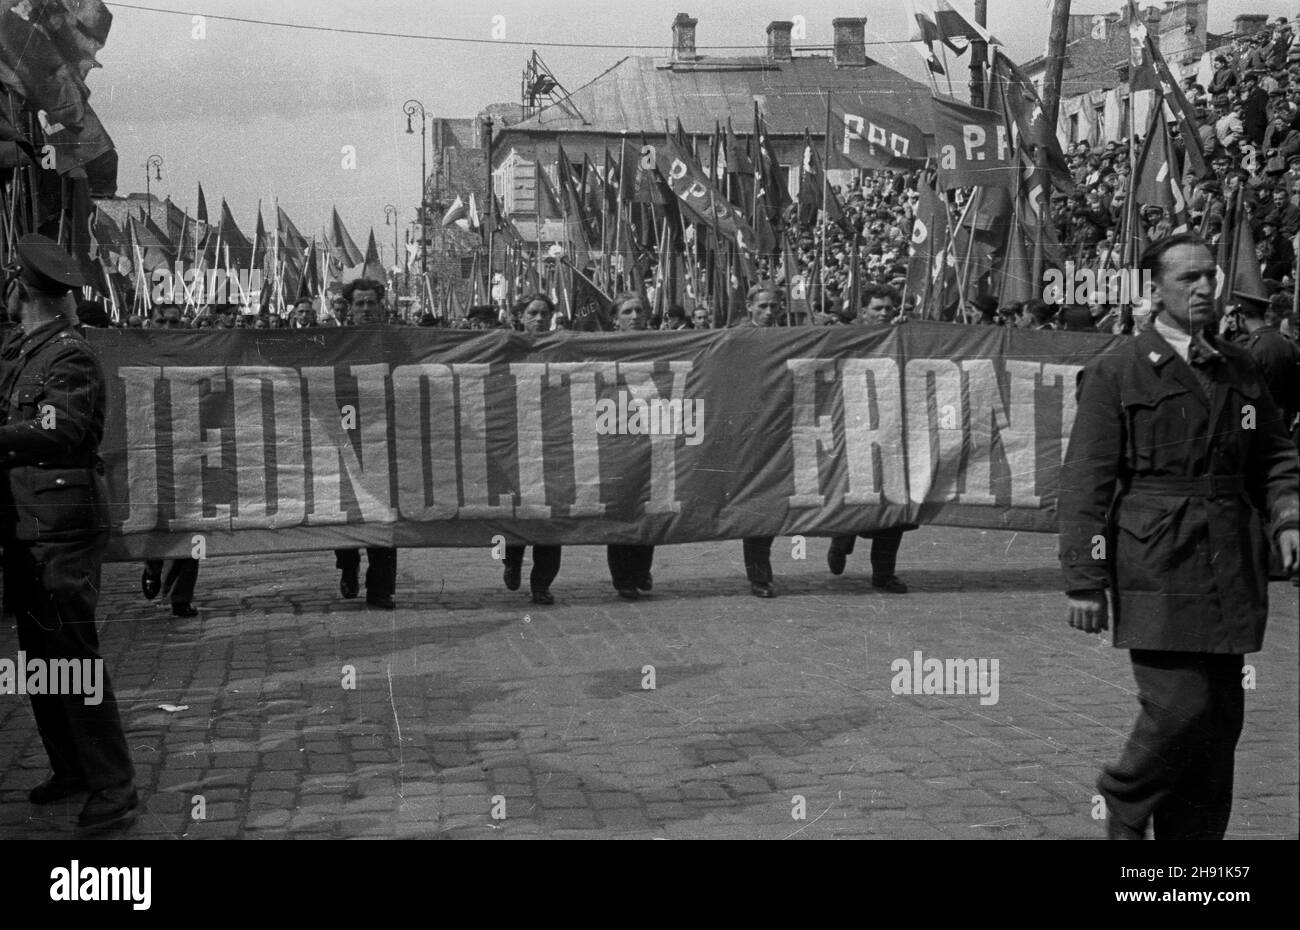 Warszawa, 1947-05-01. Pochód pierwszomajowy na ul. Nowy Œwiat. Nz. cz³onkowie PPR (Polska Partia Robotnicza) i PPS (Polska Partia Socjalistyczna) z has³em Jednolitego Frontu. bb/ms  PAP      Warsaw, May 1, 1947. A Mayday parade in Nowy Swiat. Pictured: Polish Worker Party and Polish Socialist Party members with a United Front banner.  bb/ms  PAP Stock Photo